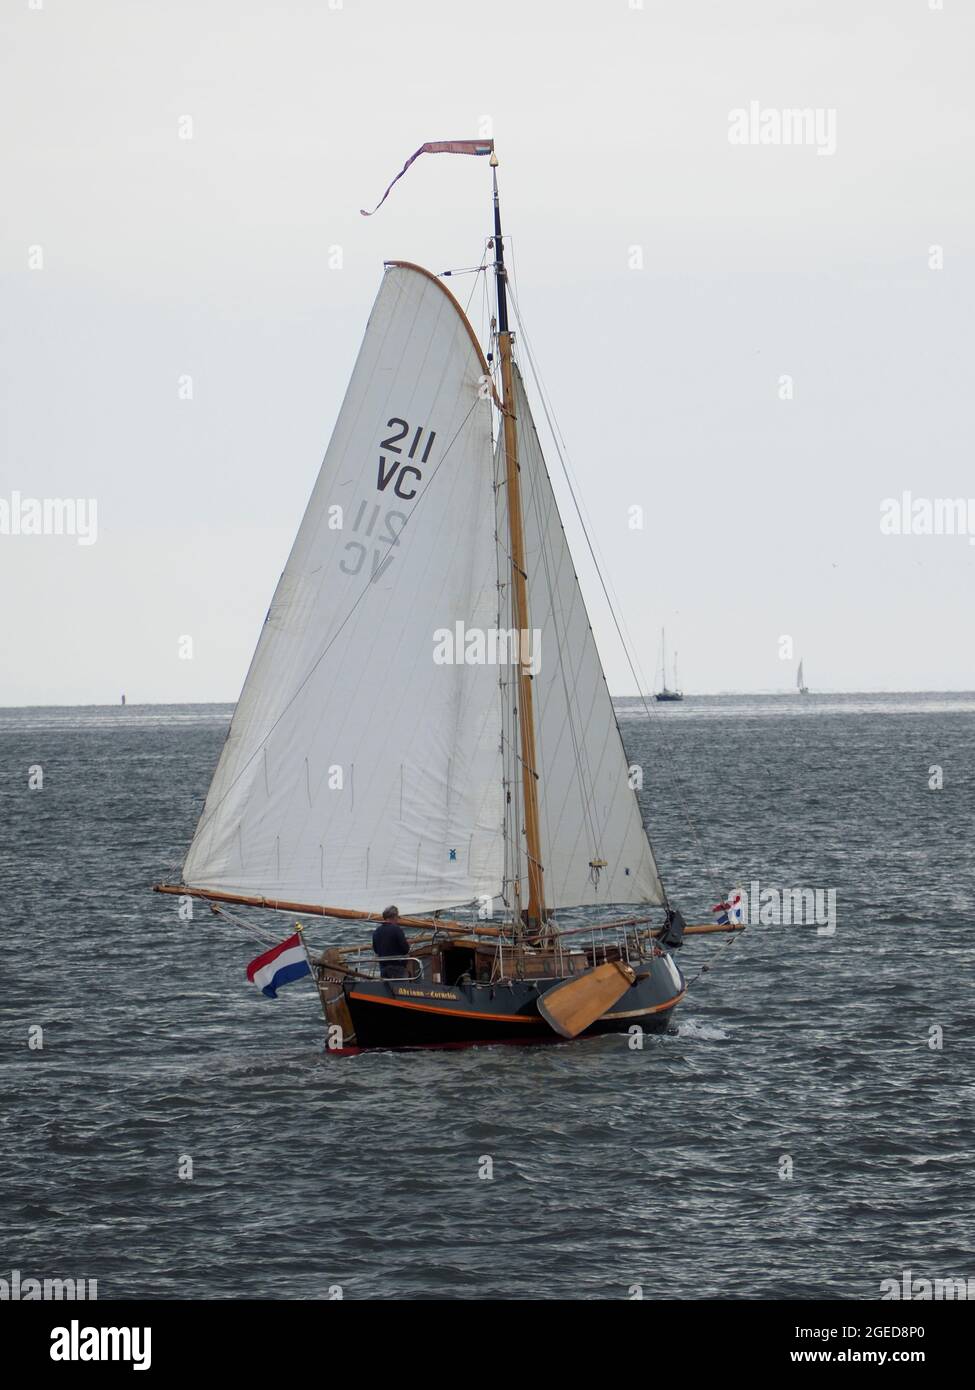 Classique vintage bateau à voile néerlandais en bois de type botter sous la voile entre Den Helder et l'île de Texel, les pays-Bas Banque D'Images